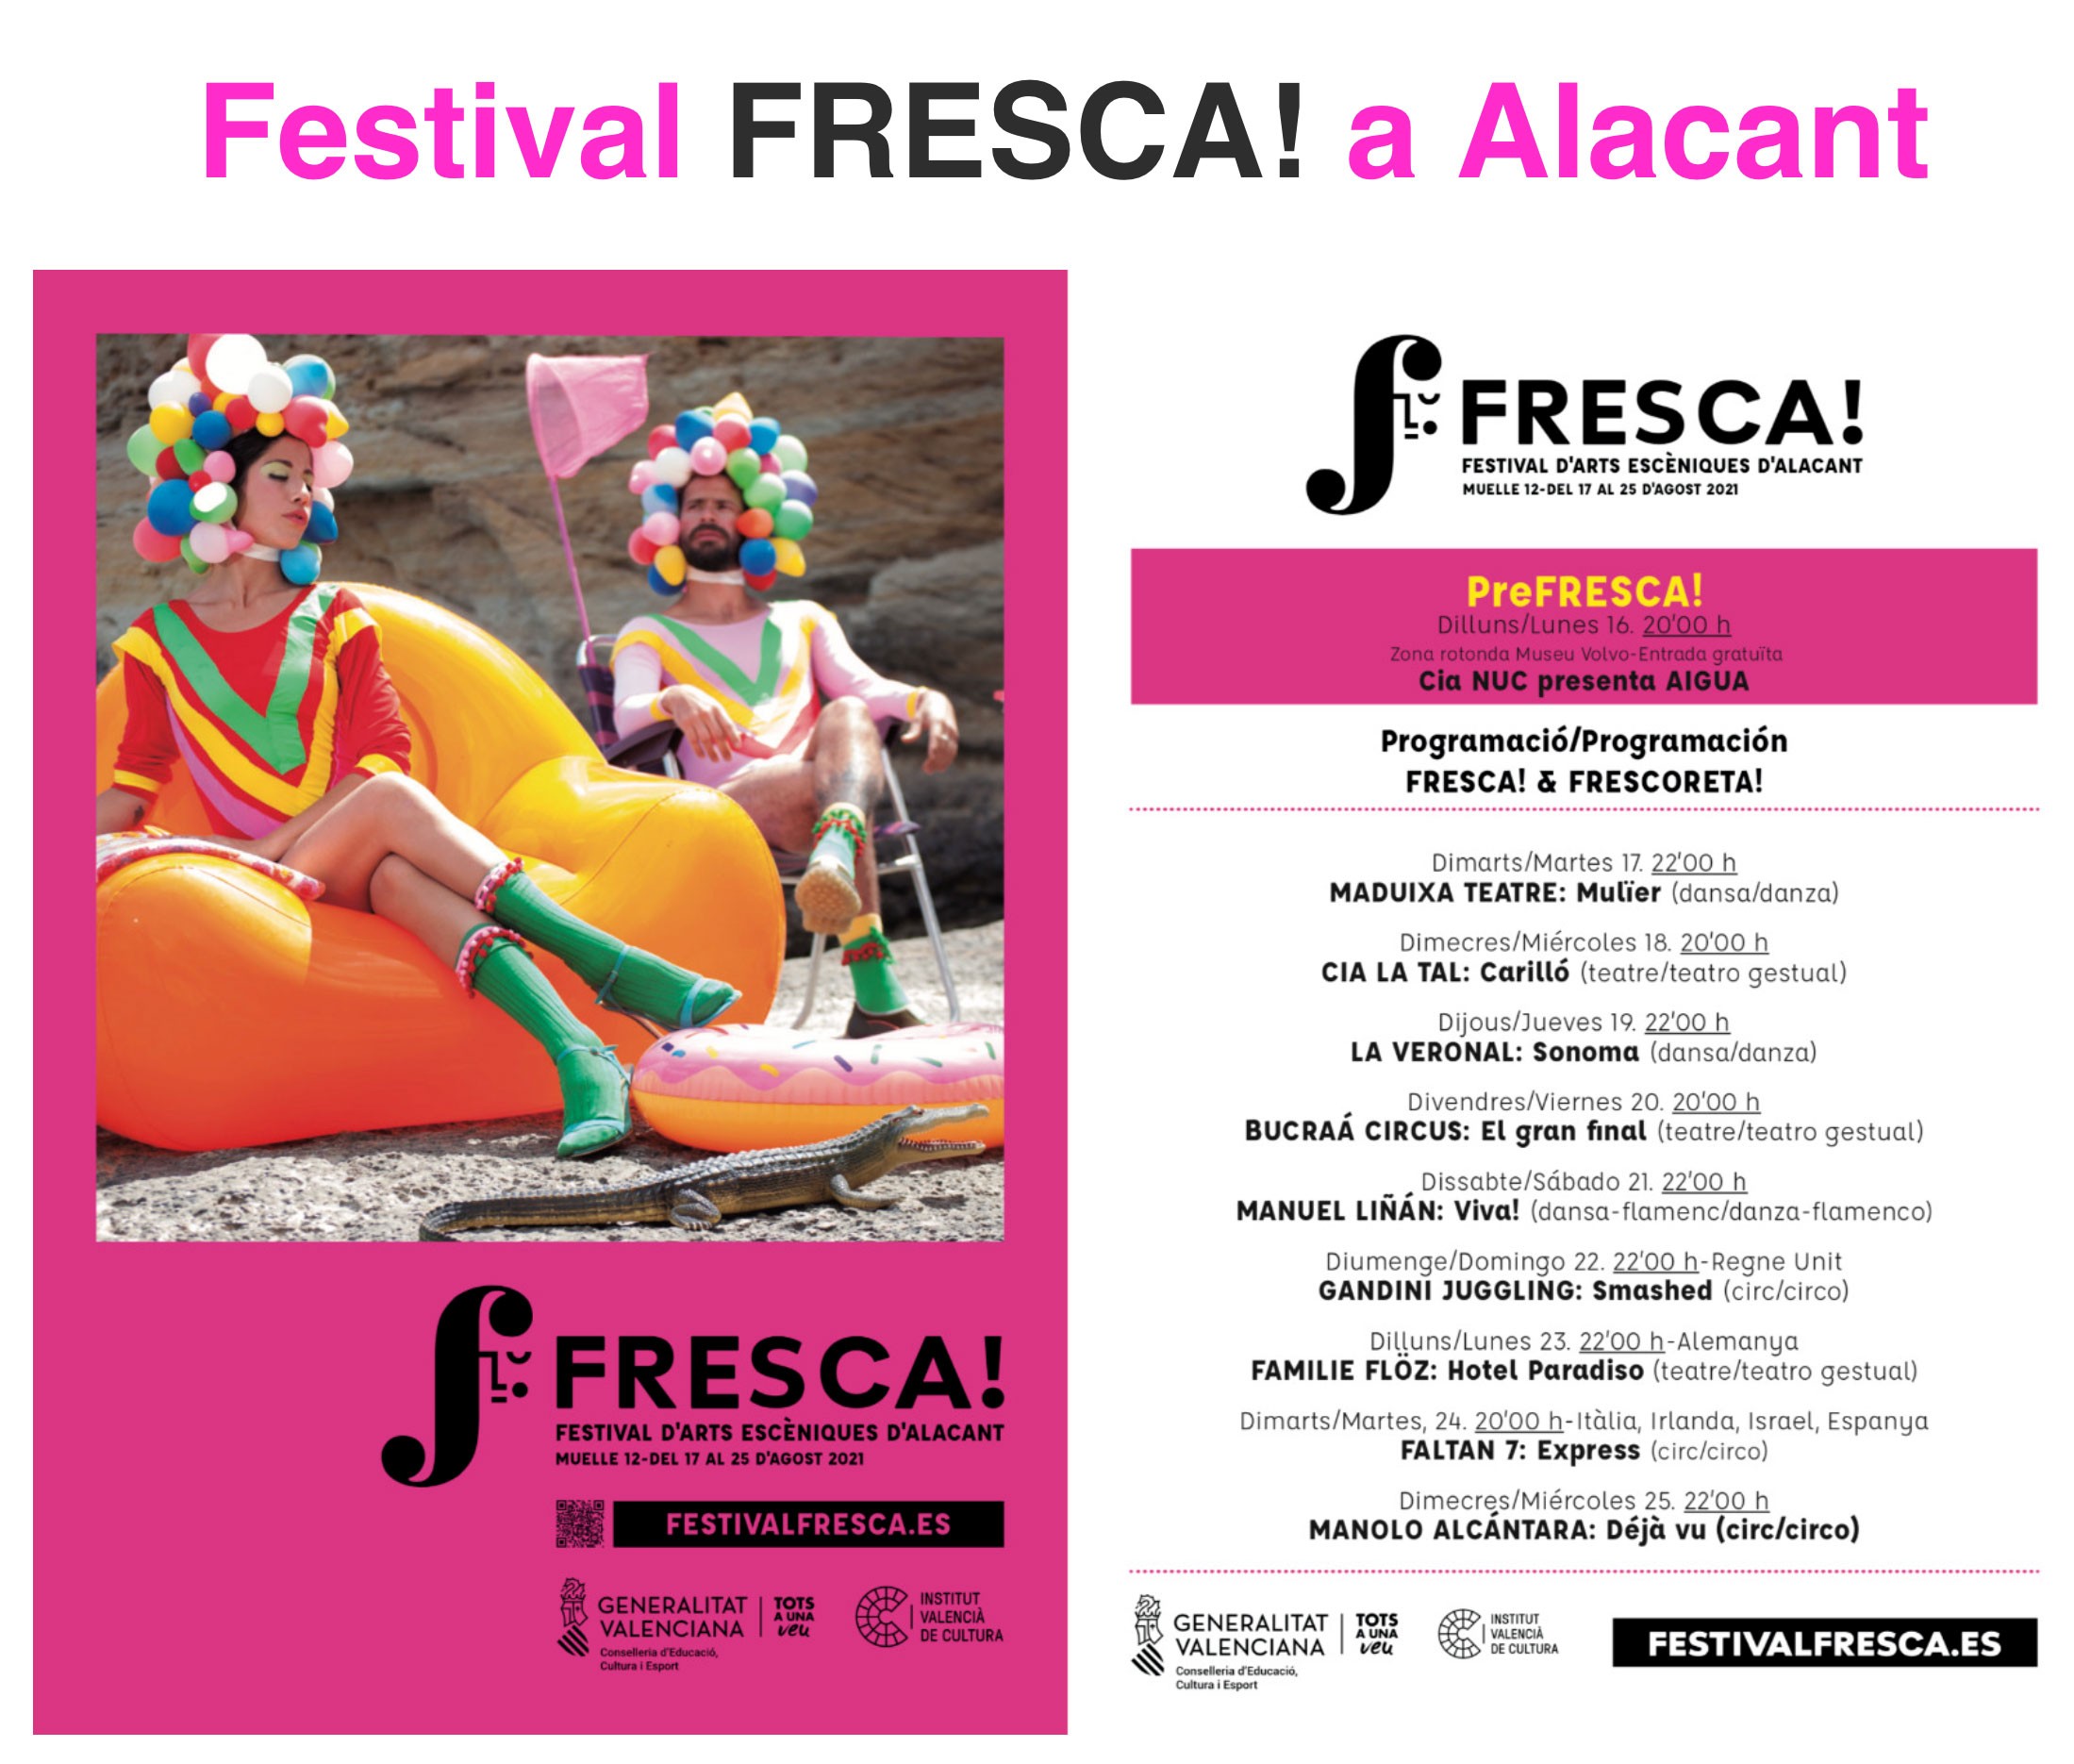 FRESCA! Festival Alicante 2021